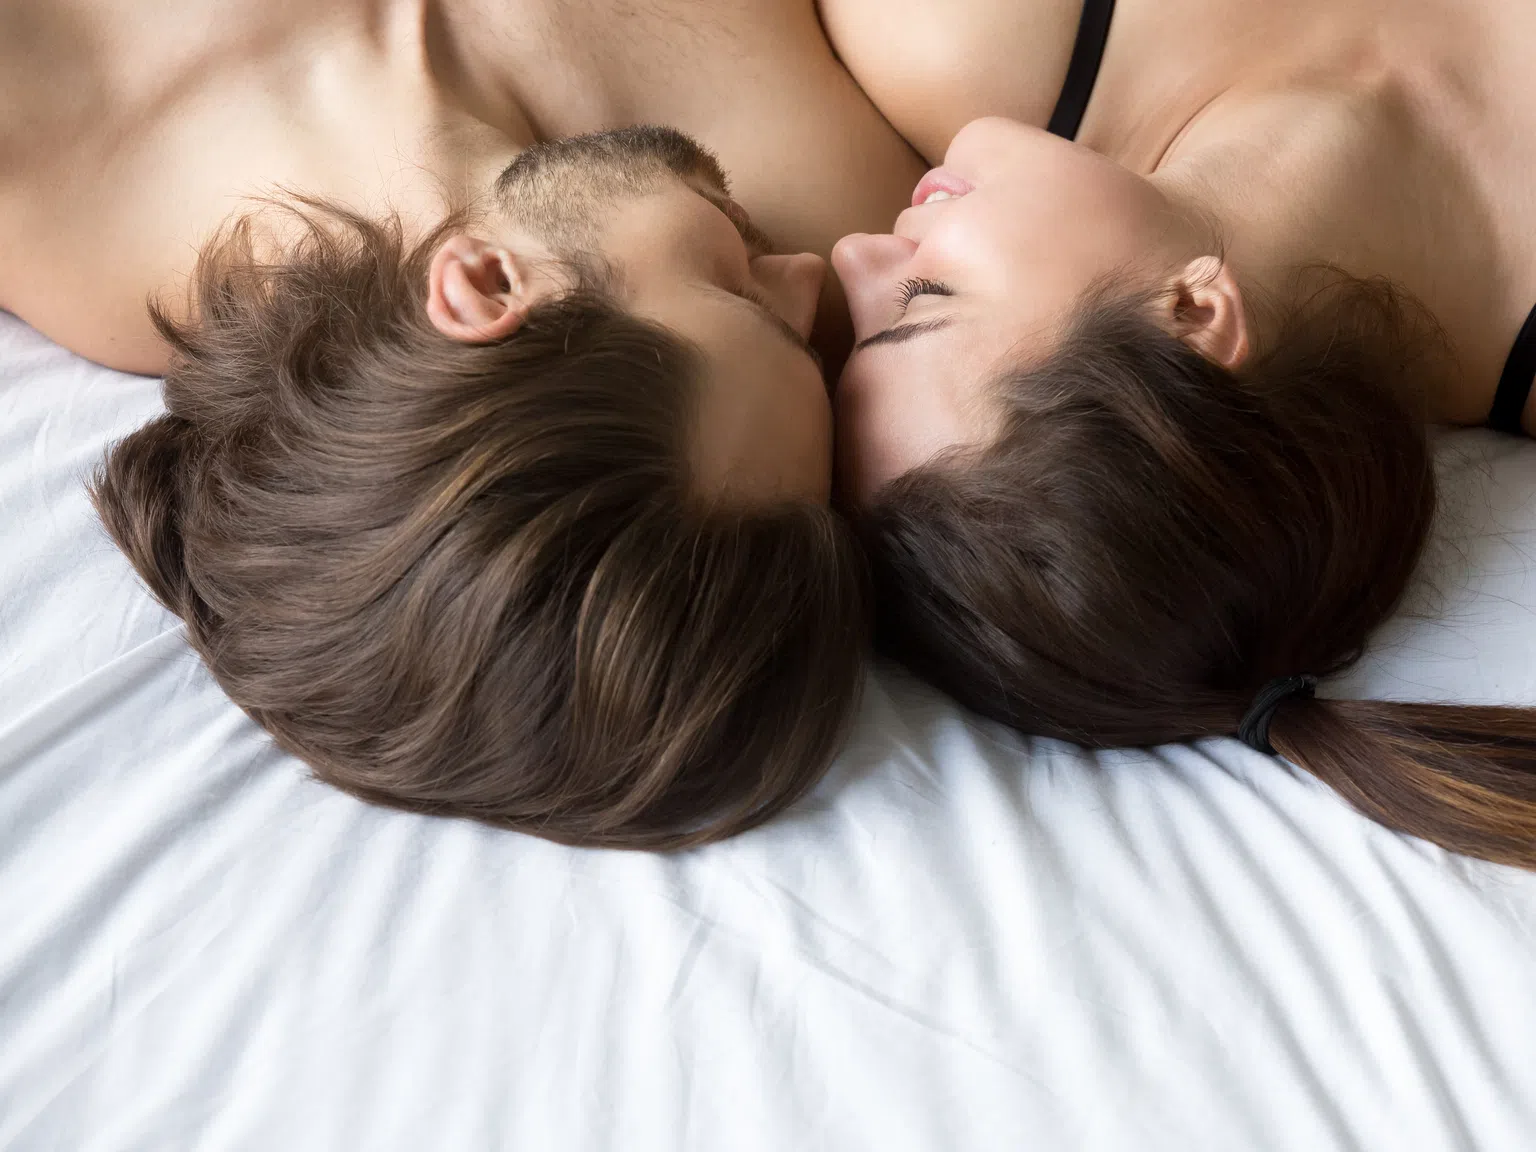 Колко точно сексуални партньори трябва да има човек през живота си?